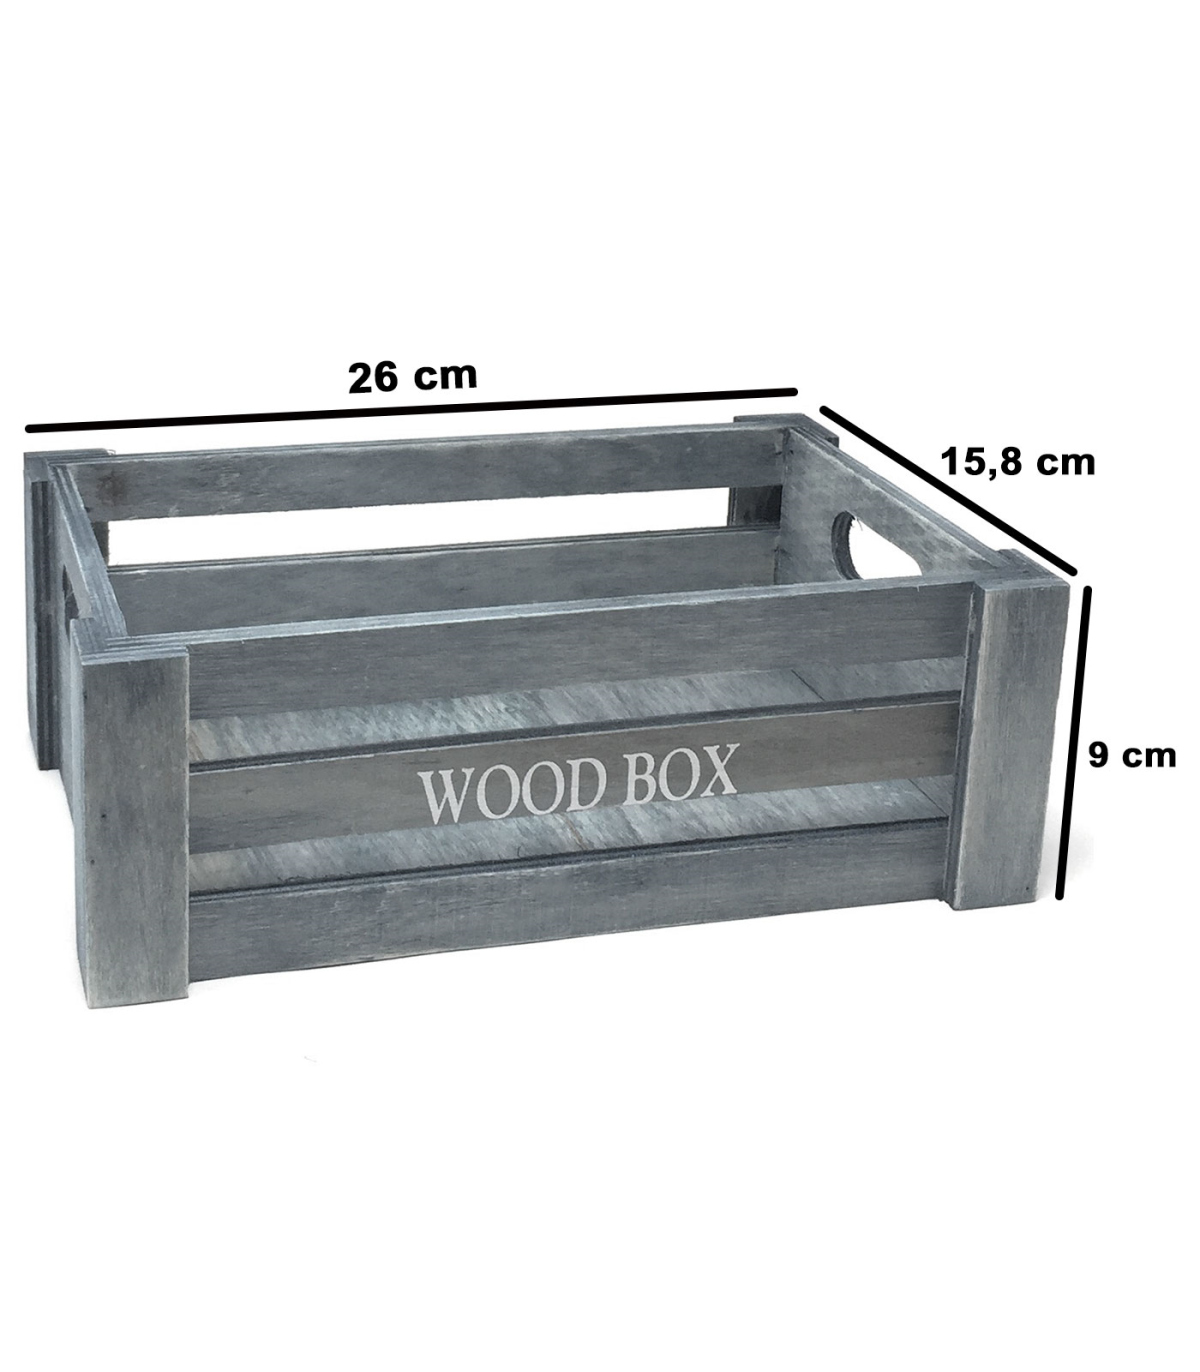 Tradineur - Set de 2 cajas de madera con asas, wood box